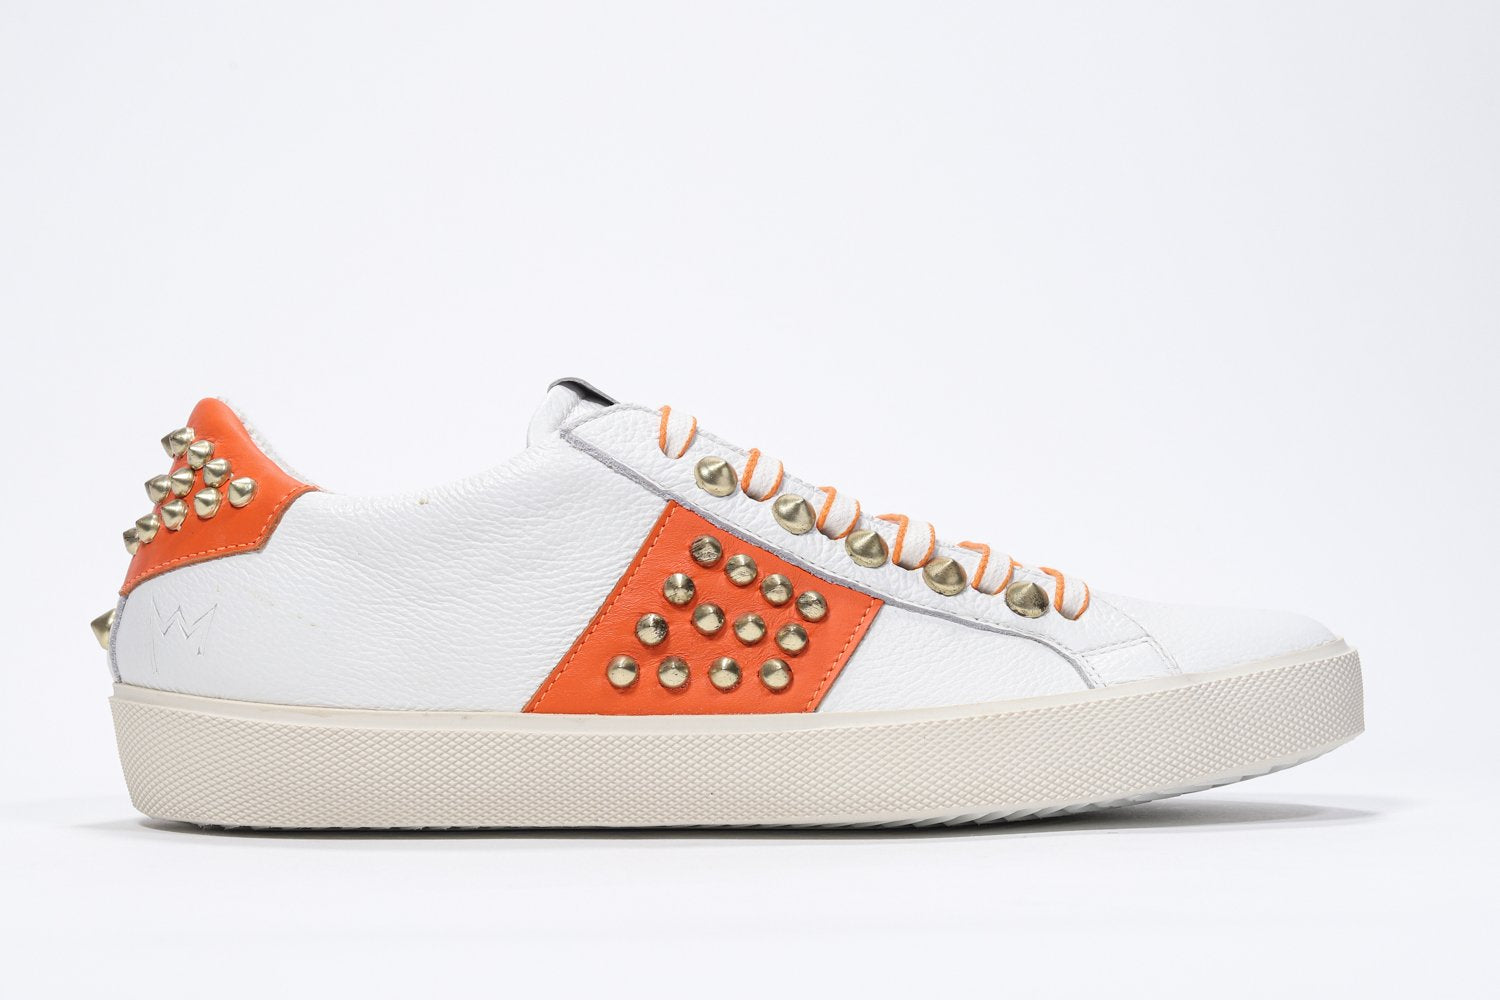 Profilo laterale di BASSE bianco e arancione sneaker. Tomaia in pelle con borchie e suola in gomma vintage.